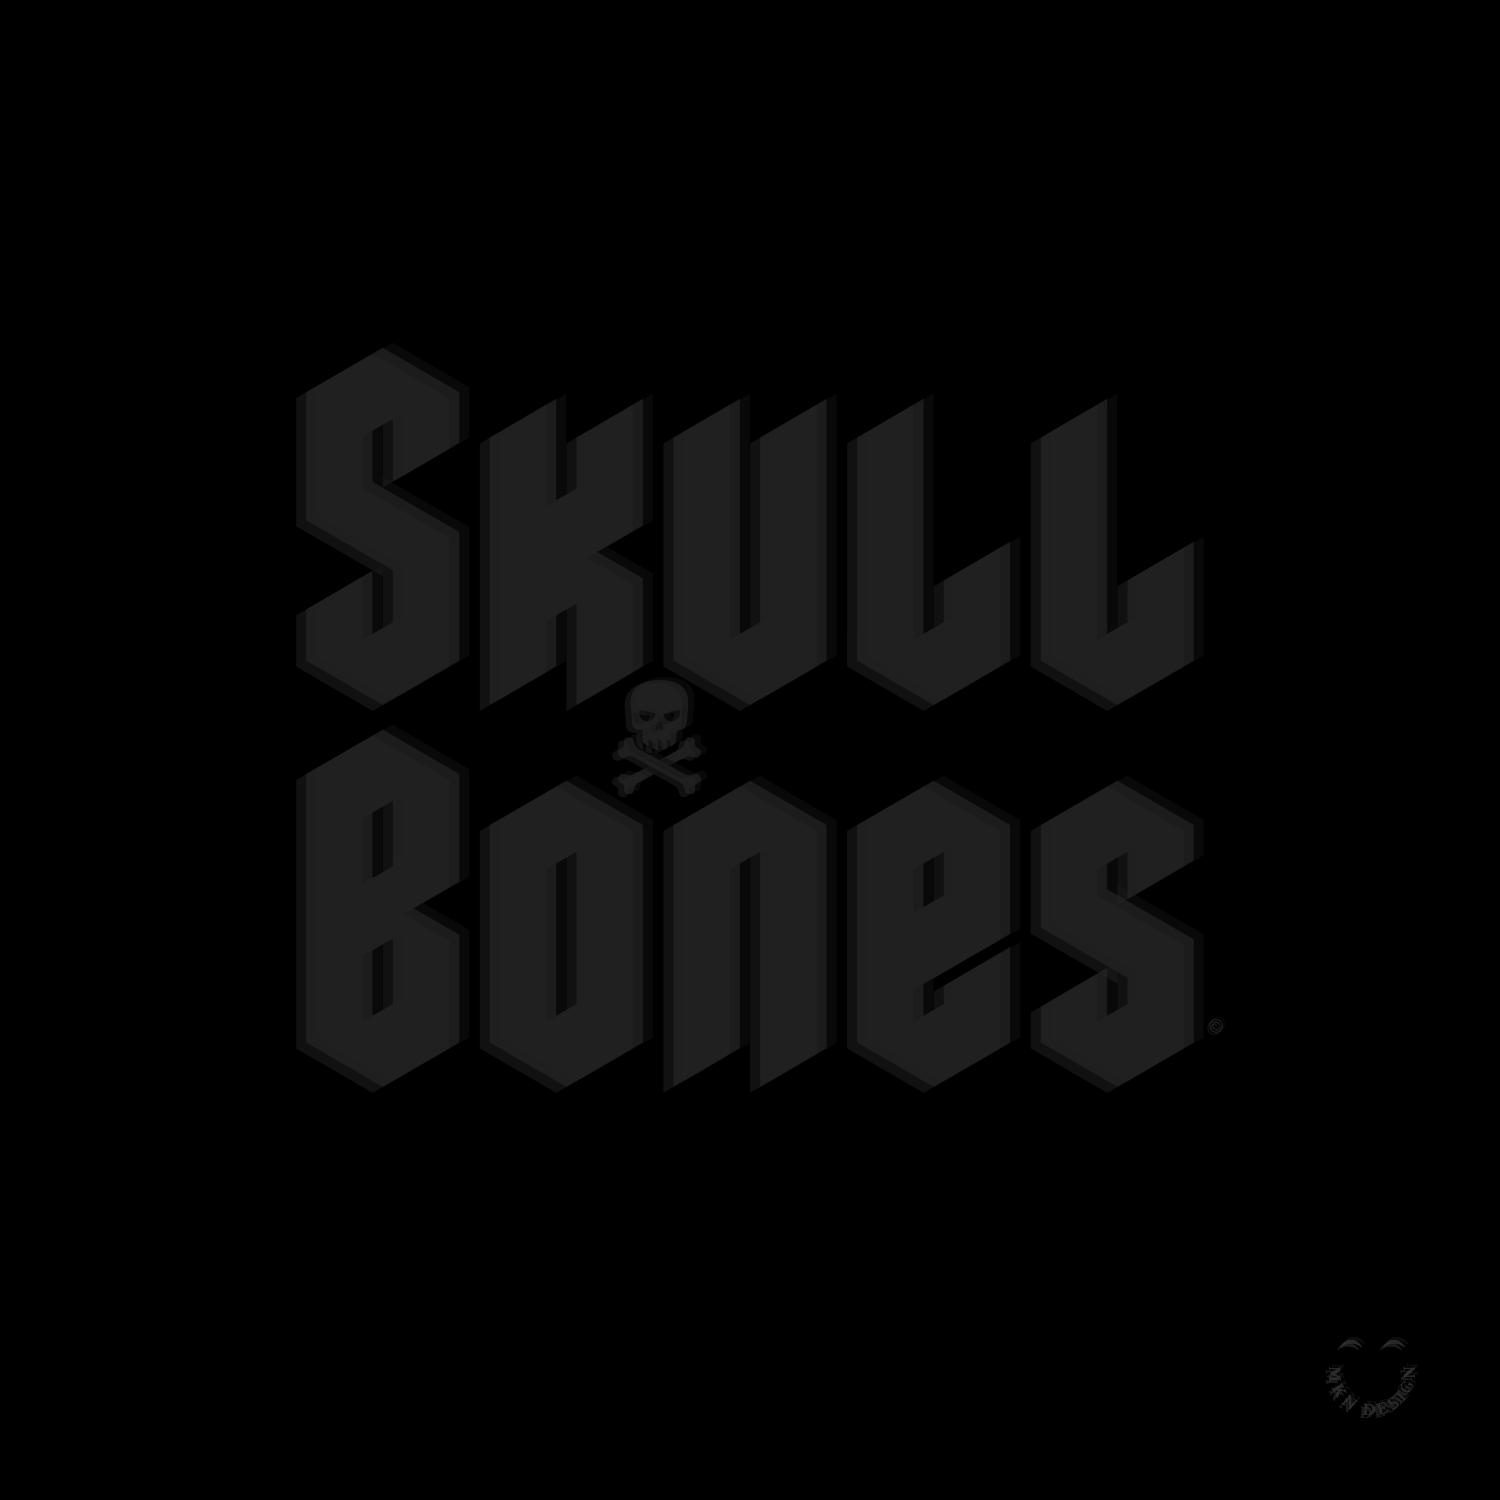 Skull_Bones_SEC_1.png